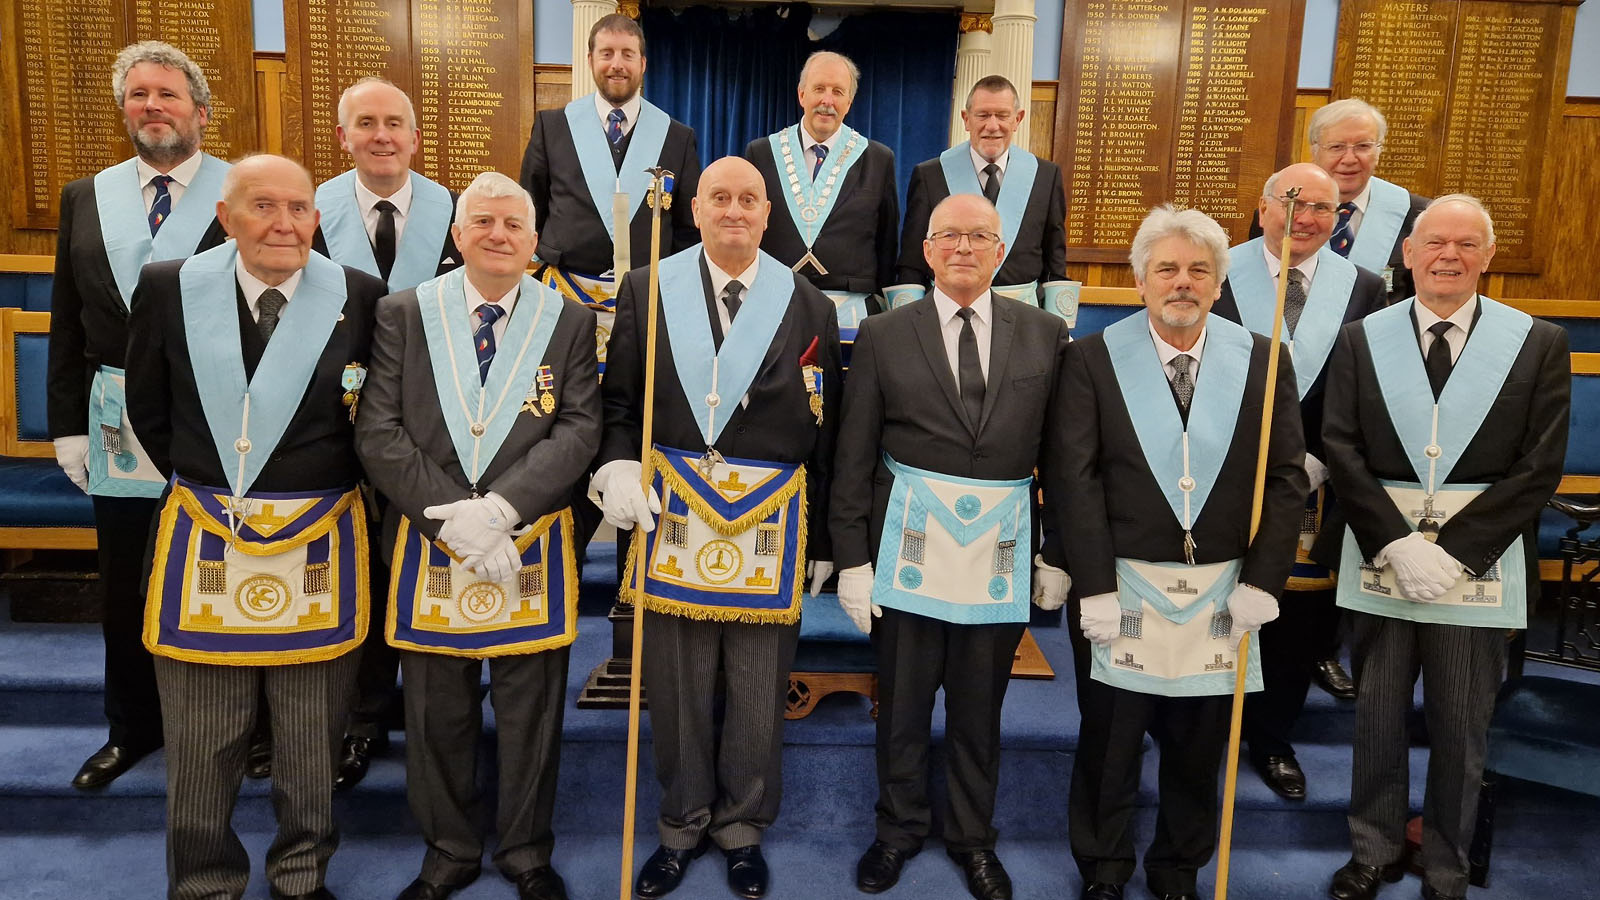 St Marks' Lodge Freemasons 